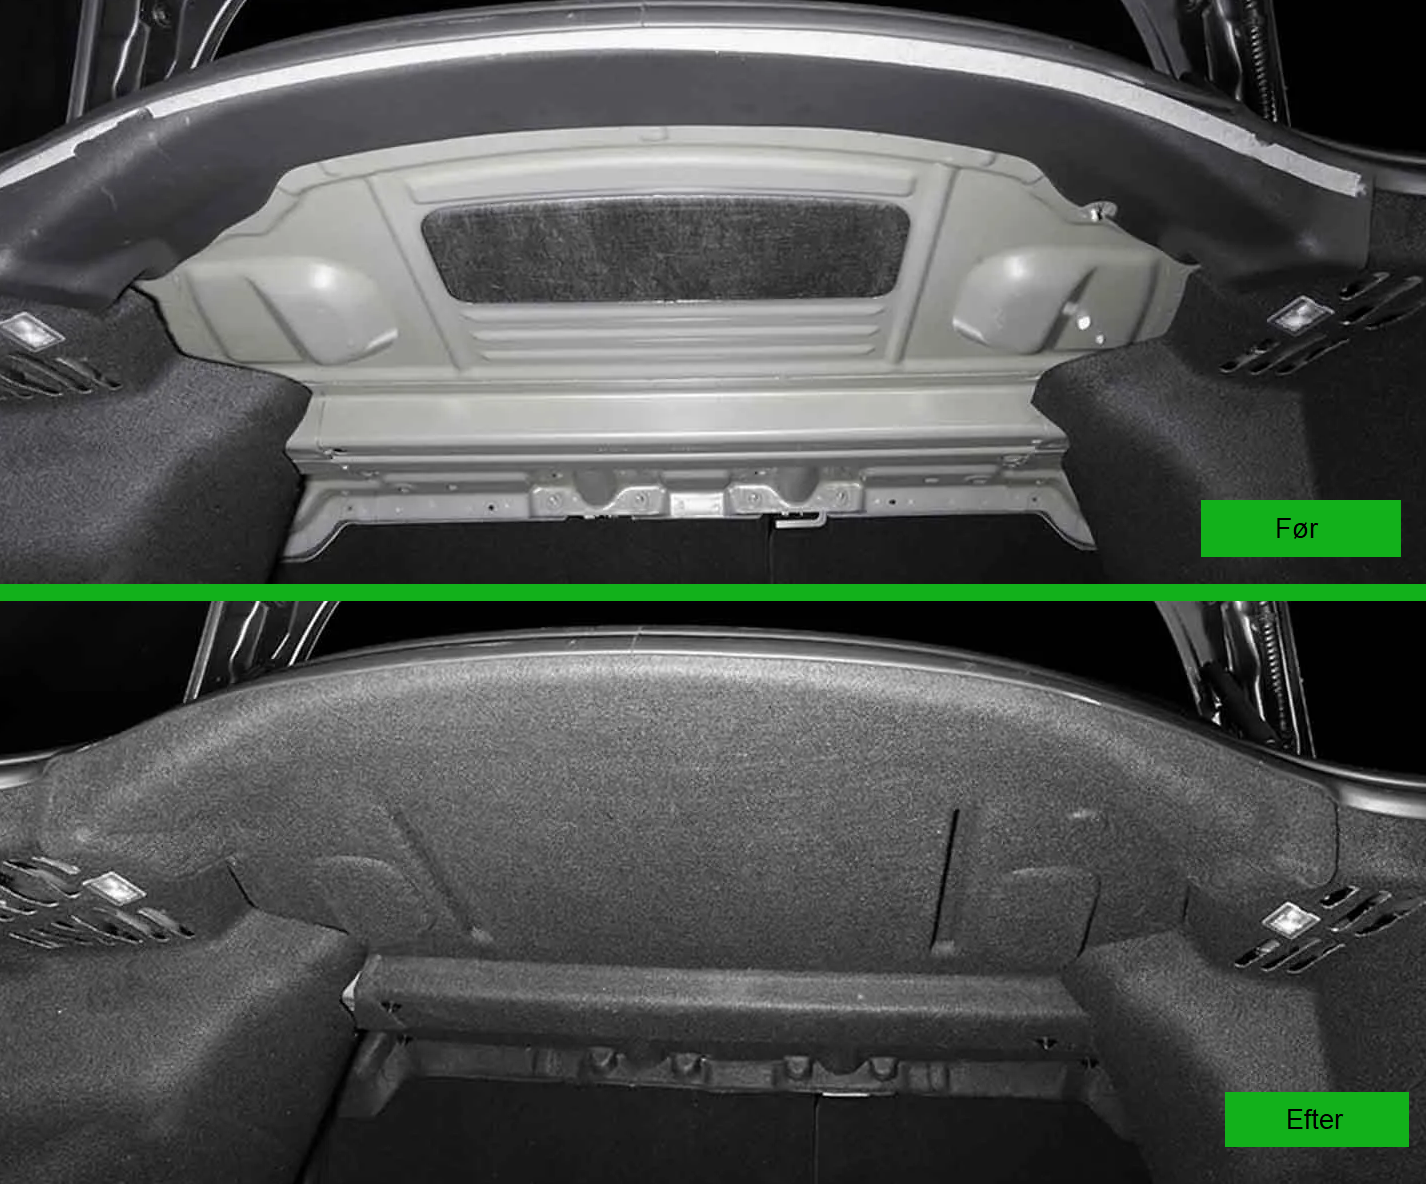 Tesla Model 3: Schallschutz für den Kofferraum